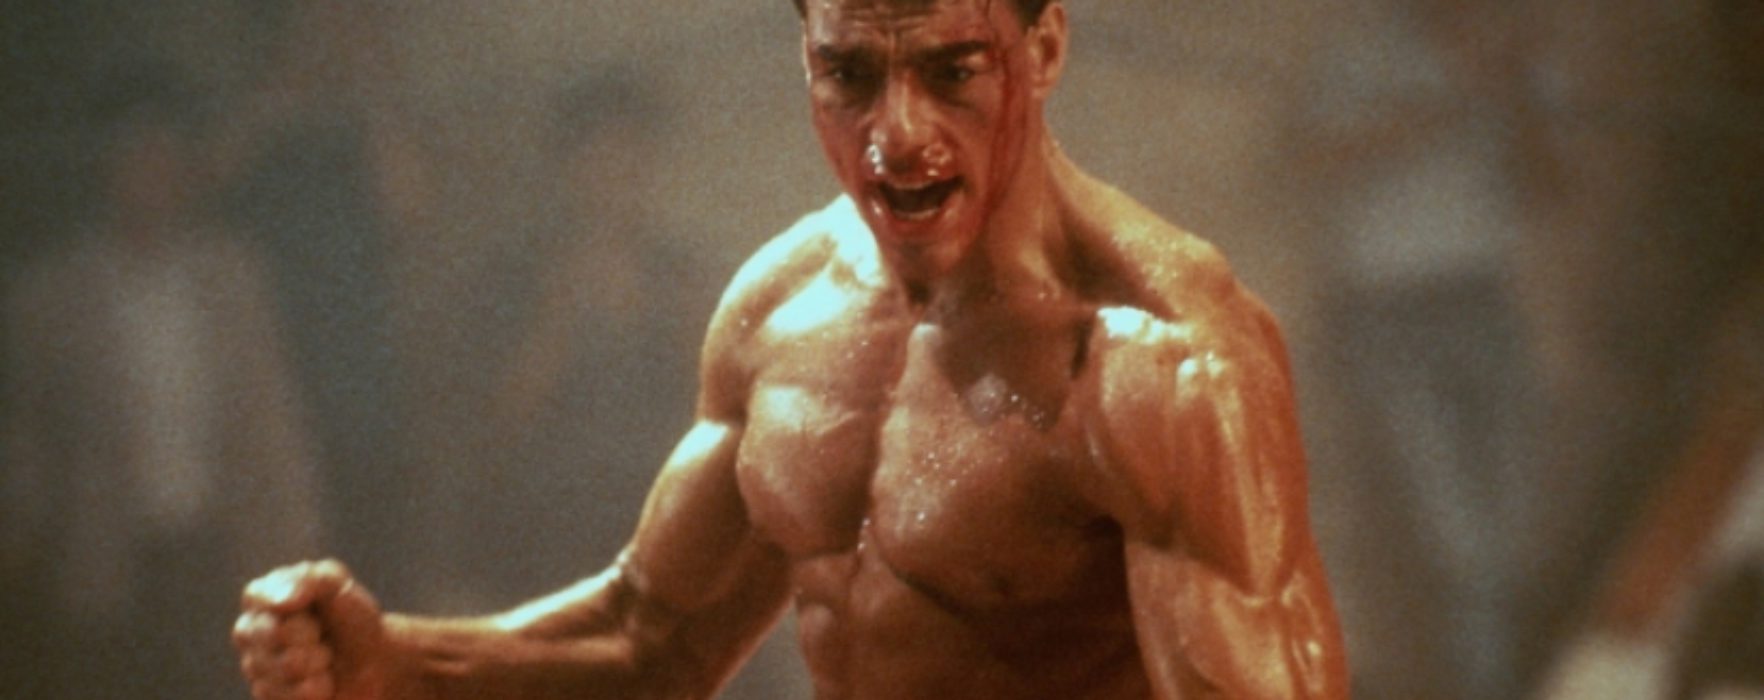 Curiosita’: campione UFC furioso con Van Damme